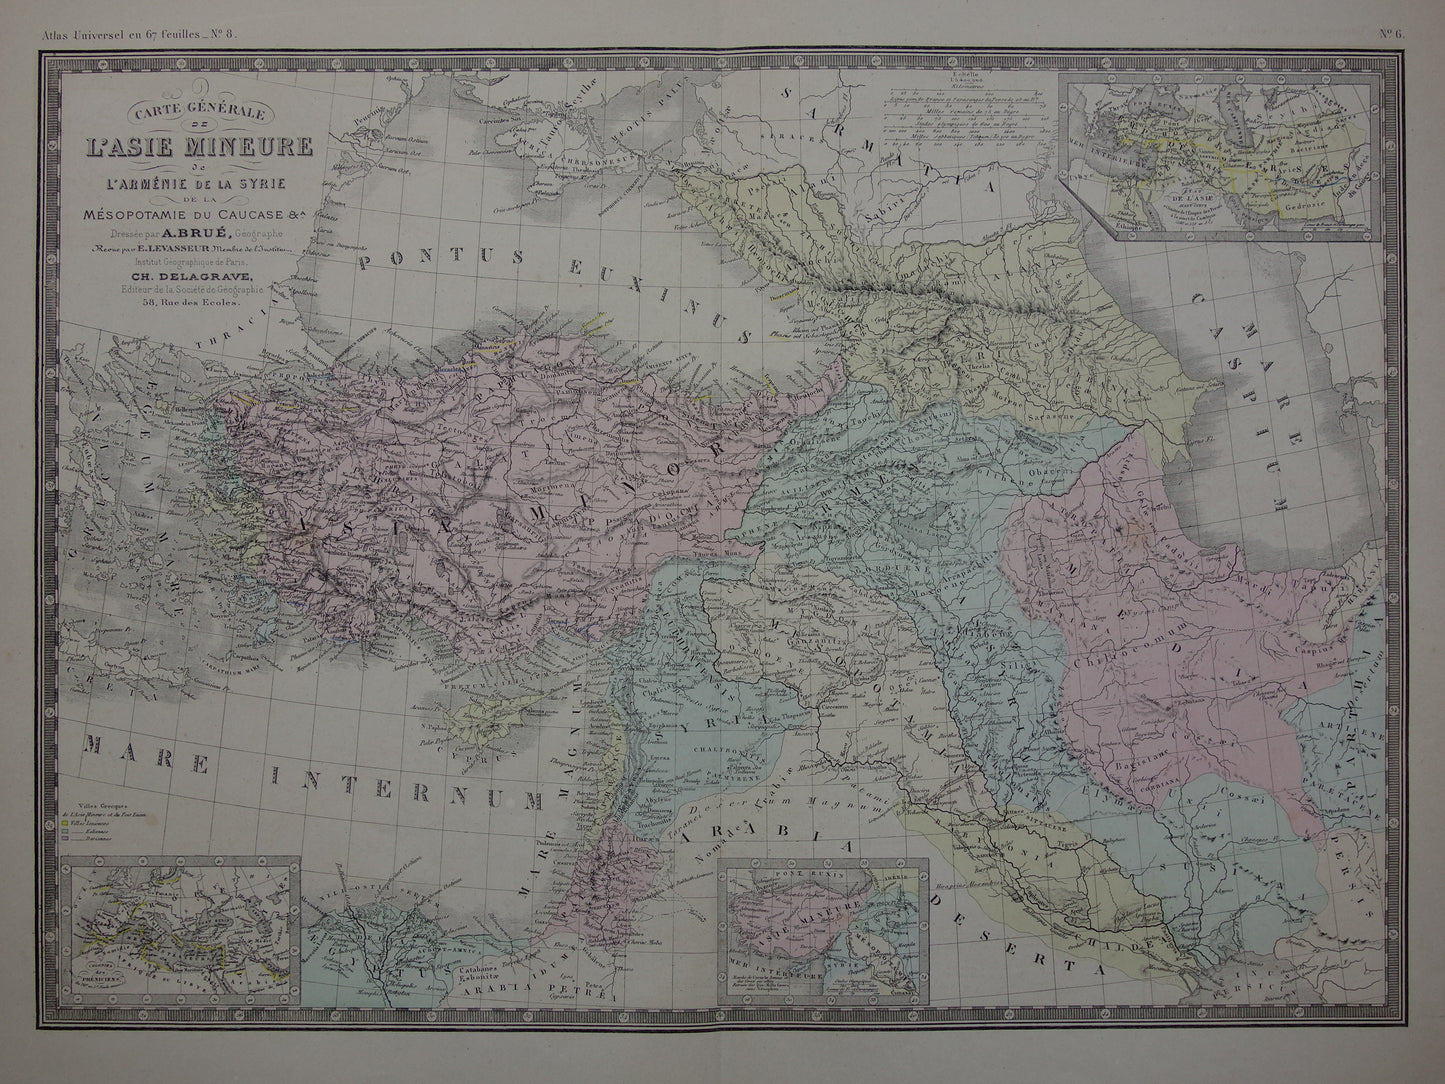 ASIA MINOR oude kaart van Turkije Perzië in de oudheid 1876 originele grote antieke landkaart Midden-Oosten geschiedeniskaart Perzische Rijk